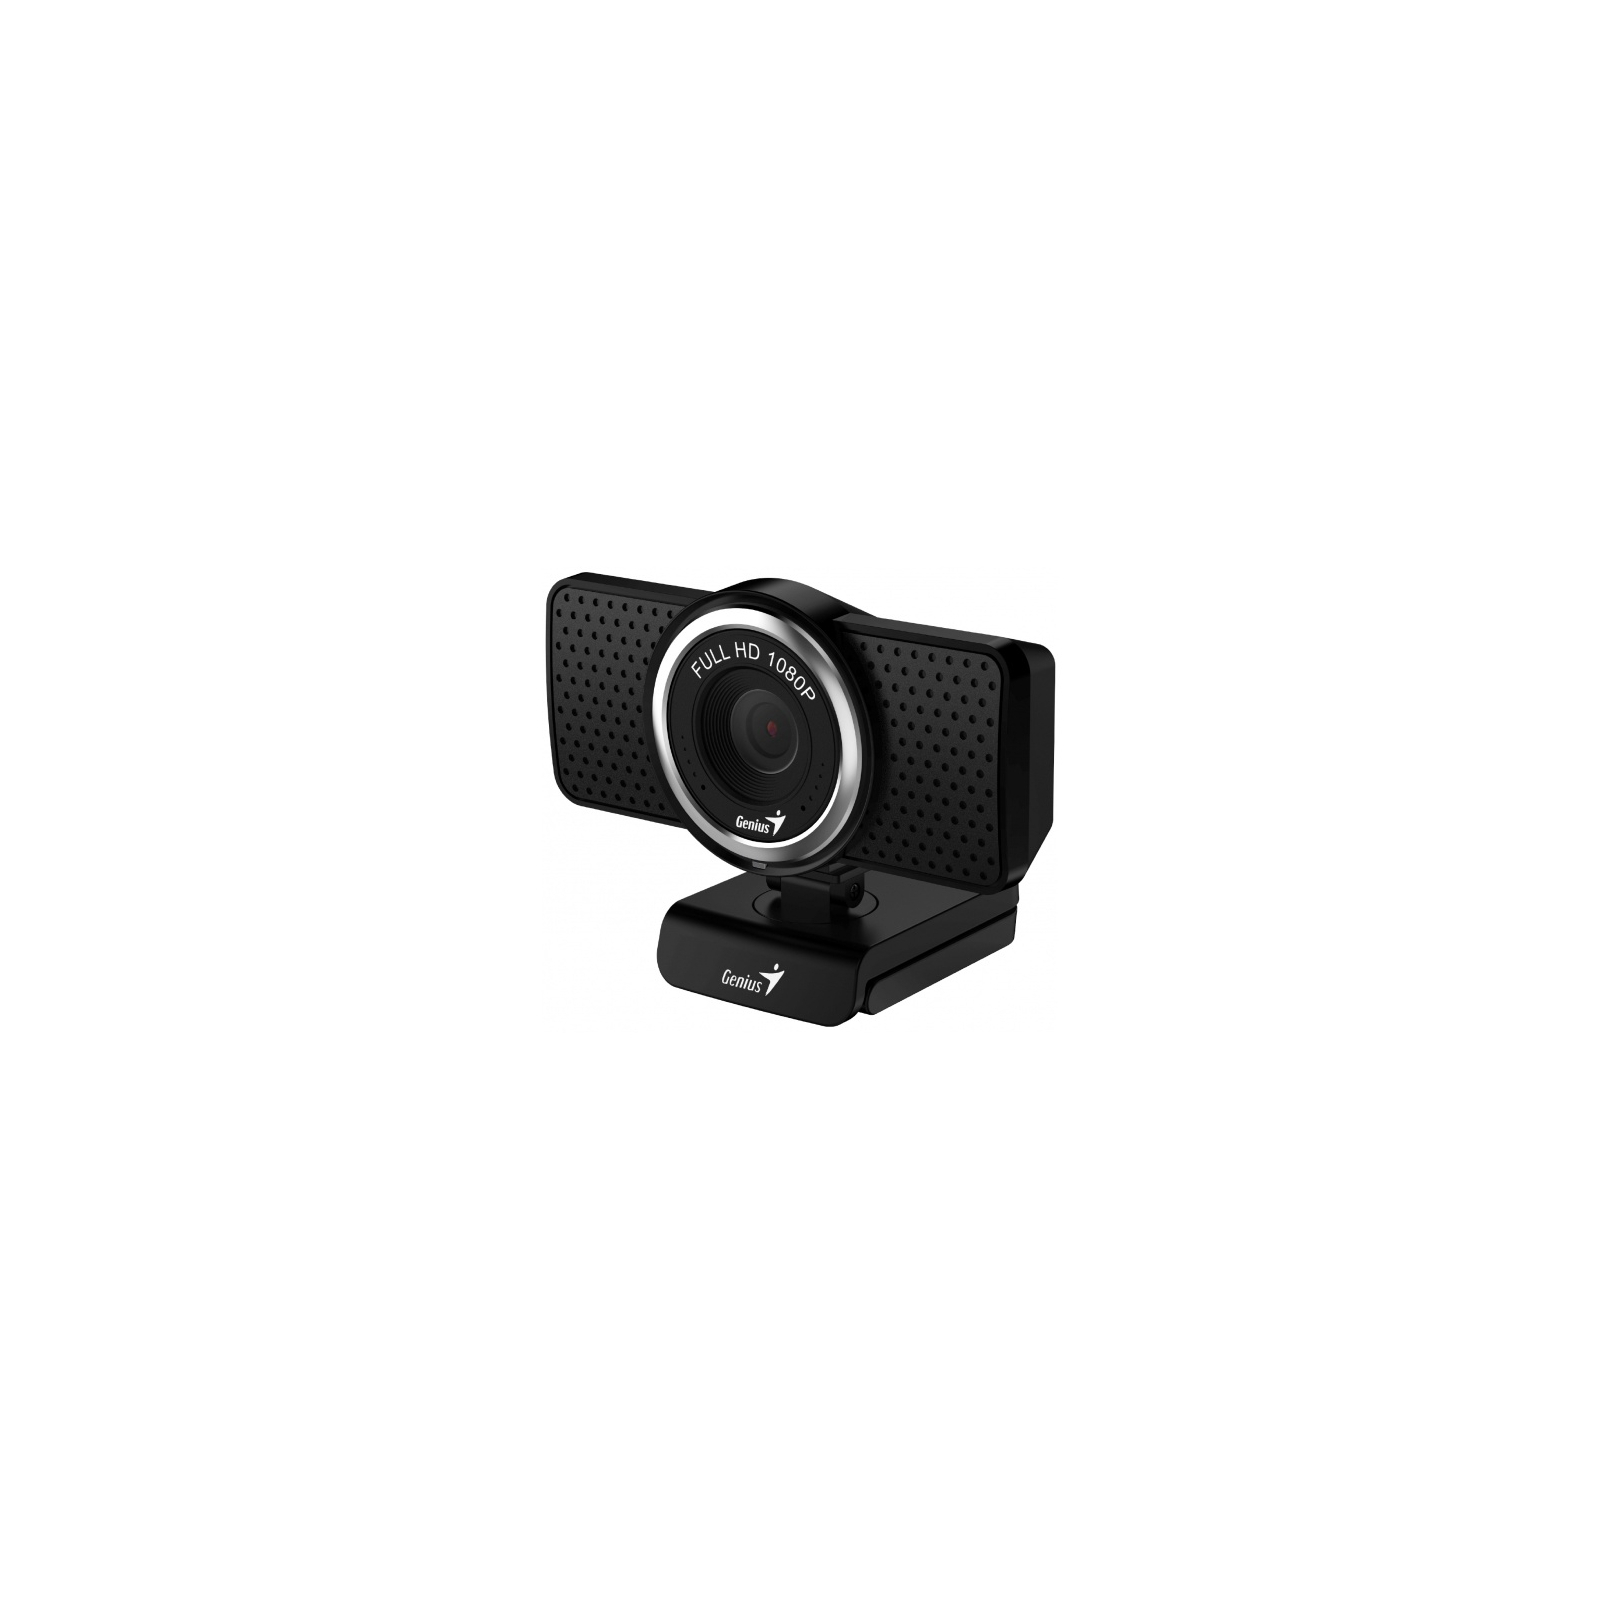 Веб-камера Genius 8000 Ecam Black (32200001406) зображення 5